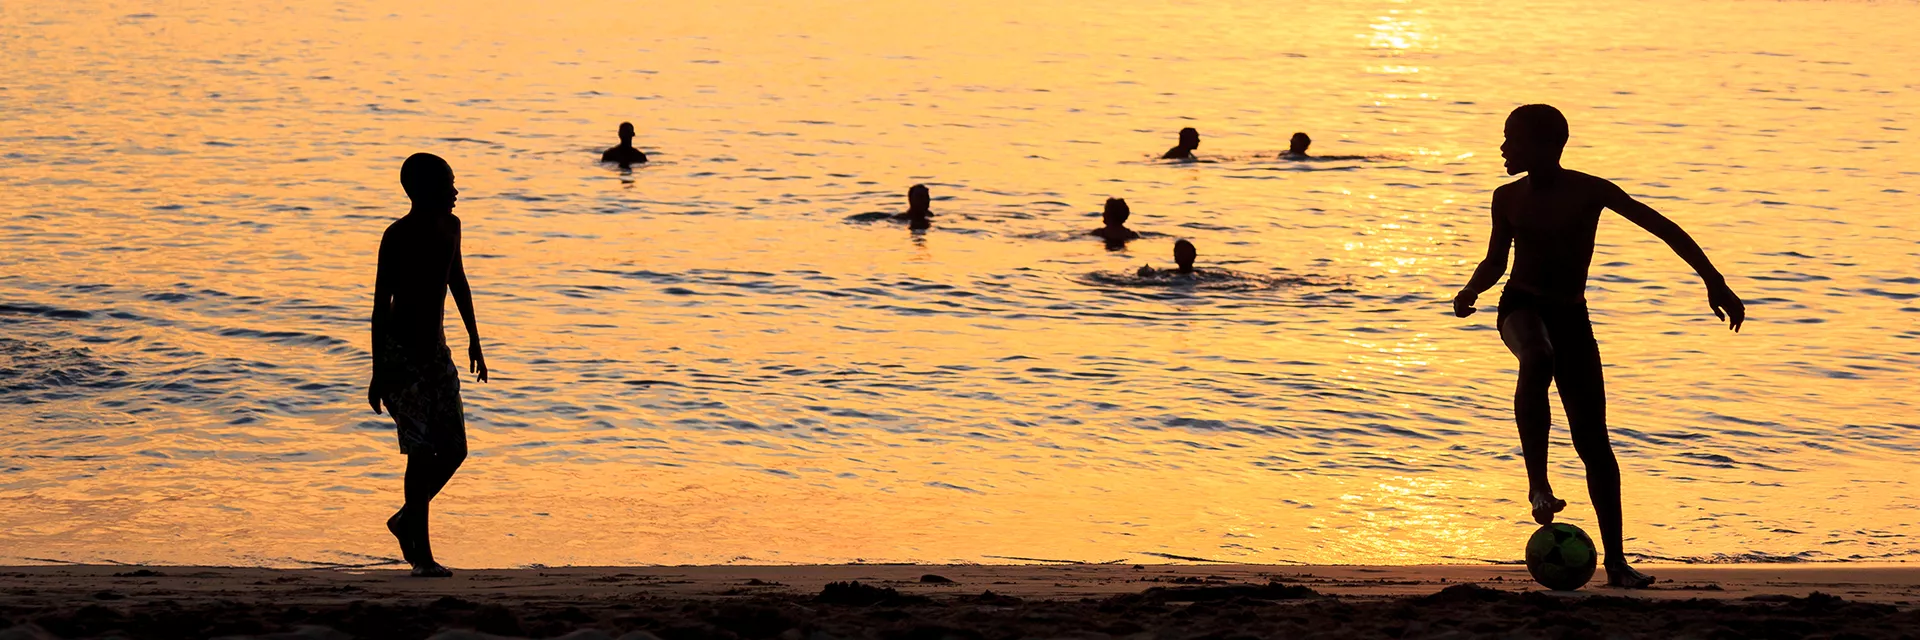 Sunset Beach Cape Verde Islands